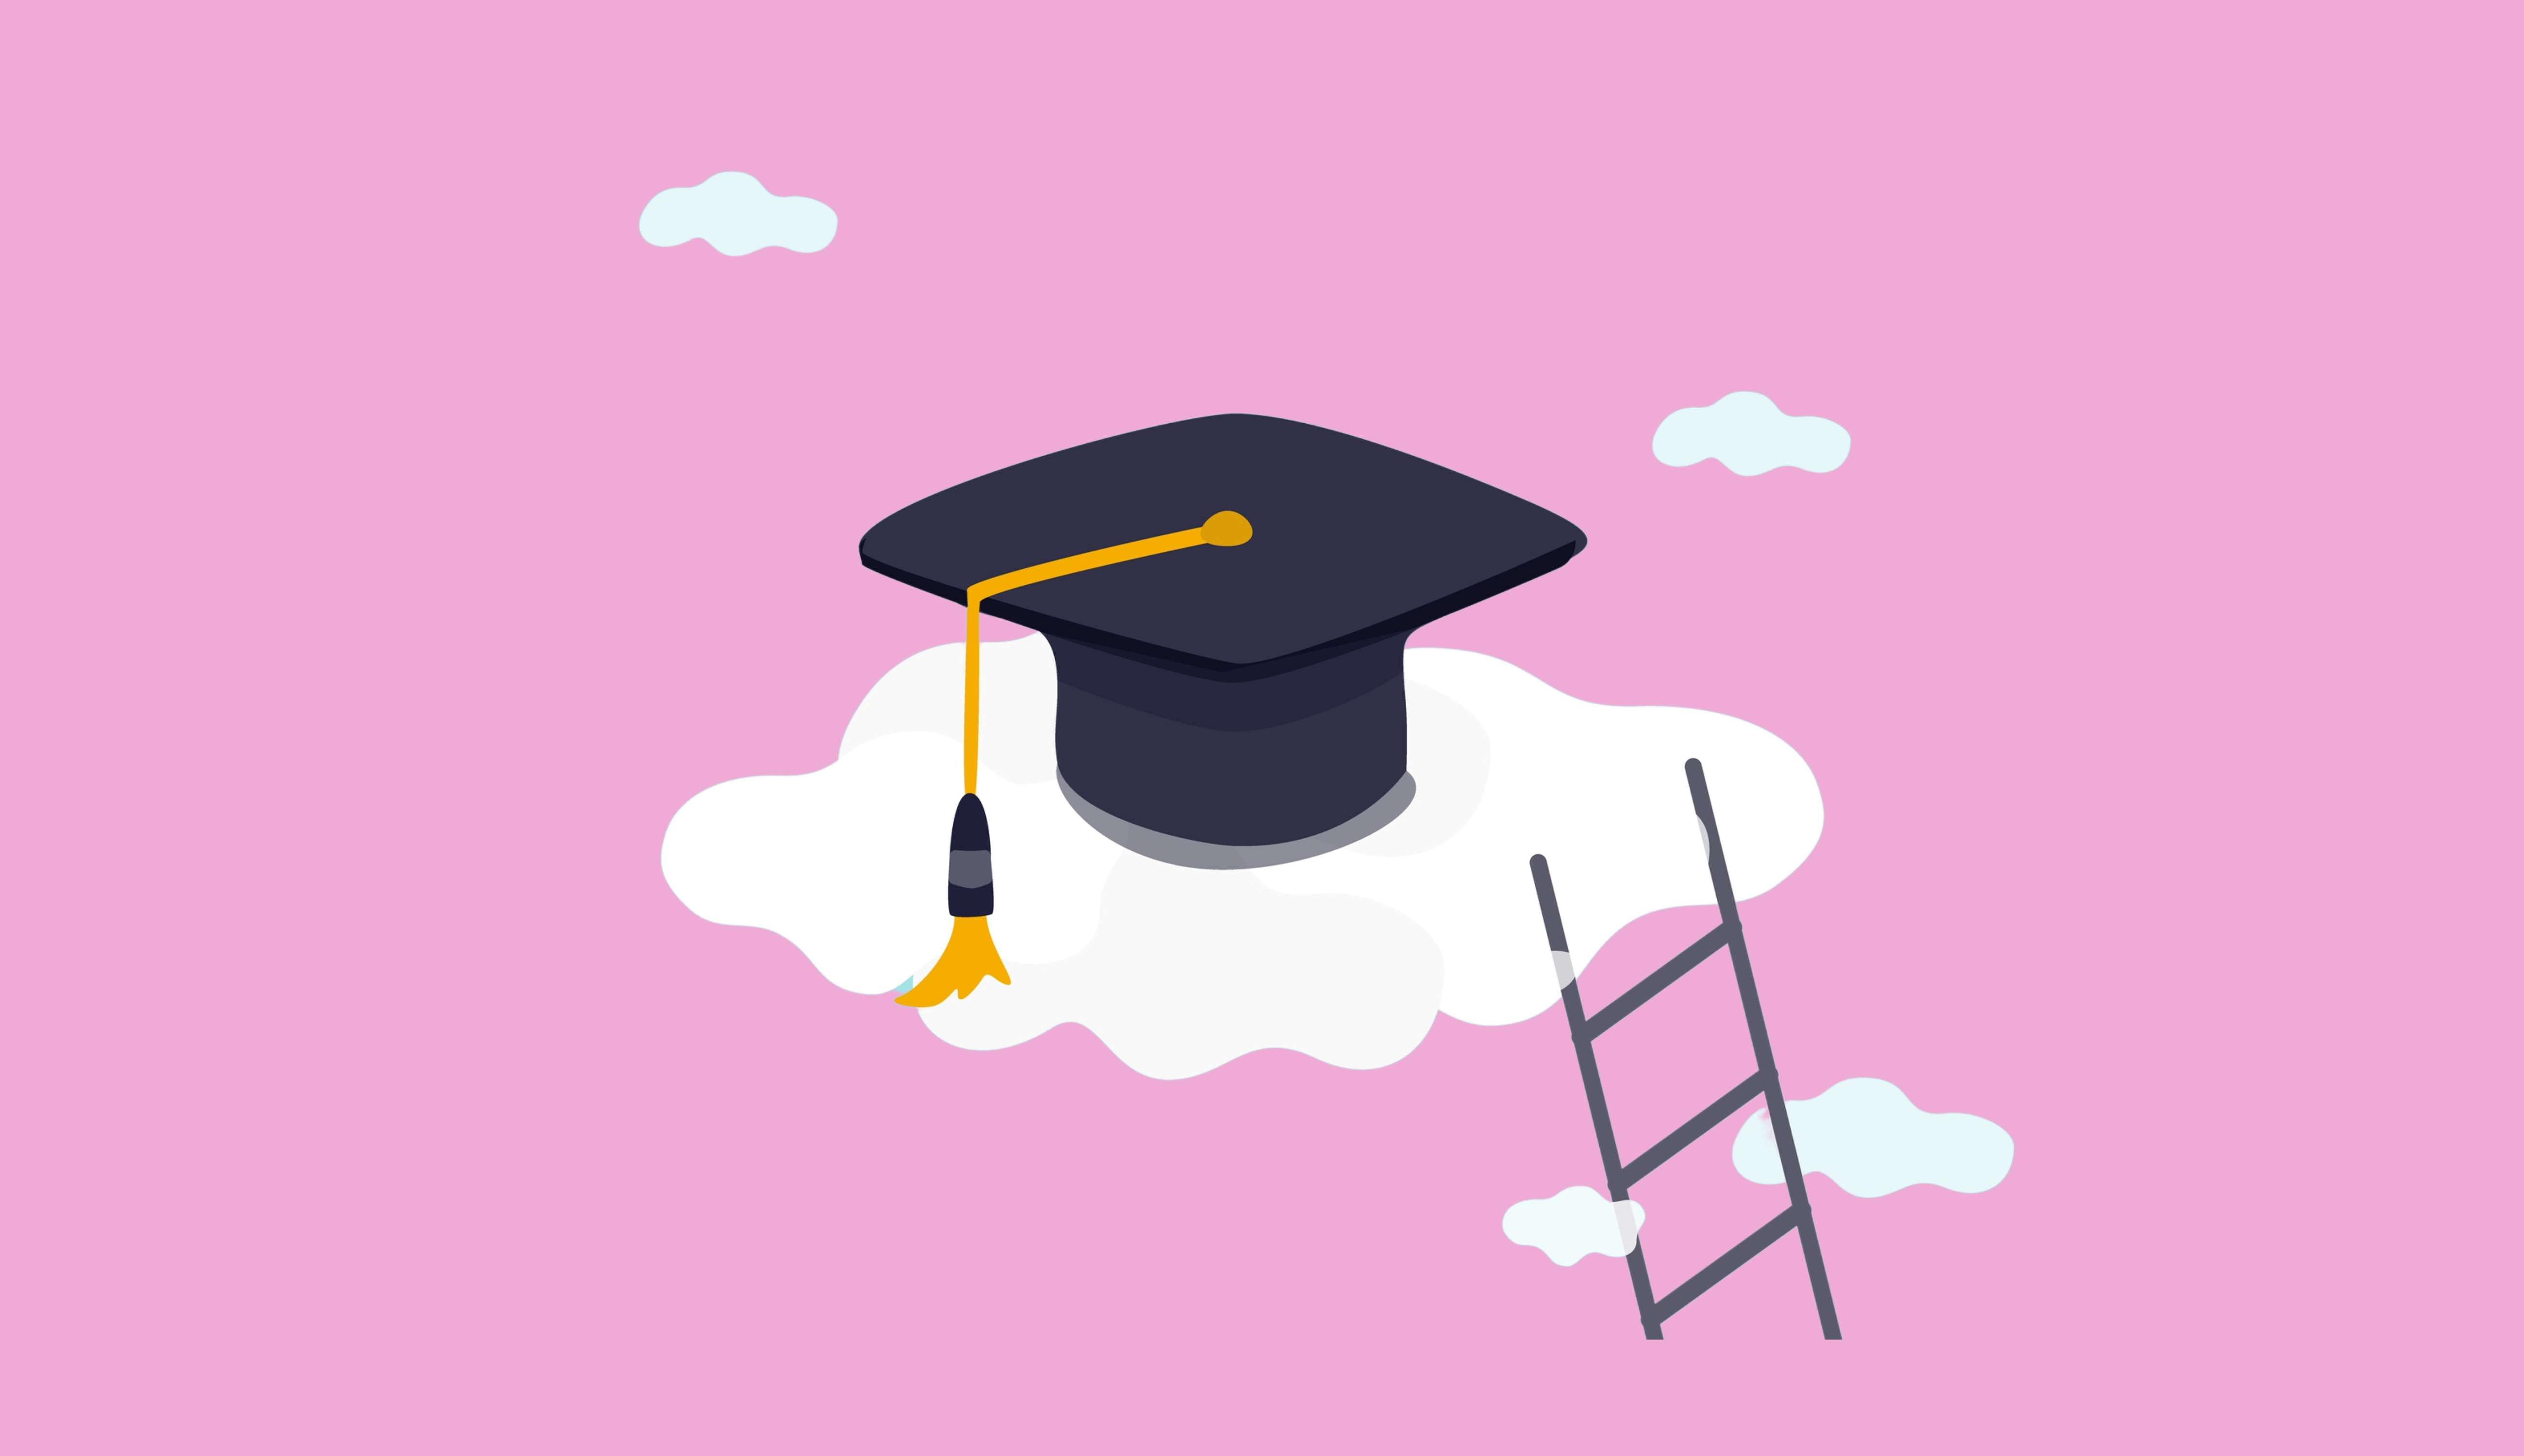 Graduation cap in clouds